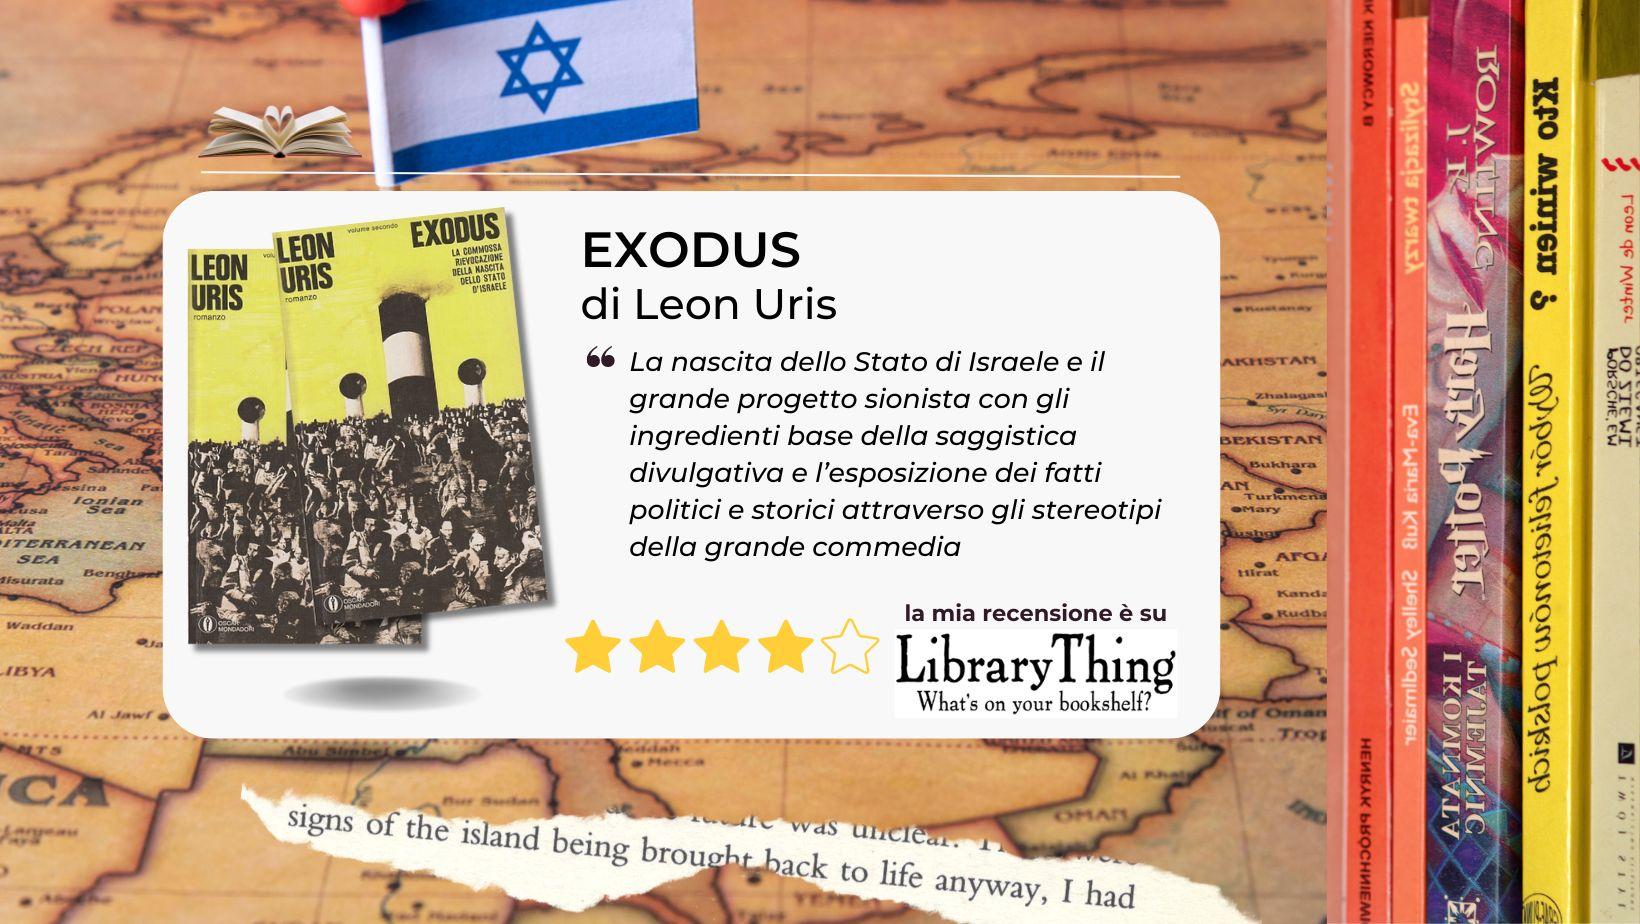 La nascita dello Stato di Israele e il grande progetto sionista con gli occhi di Leon Uris in "Exodus"